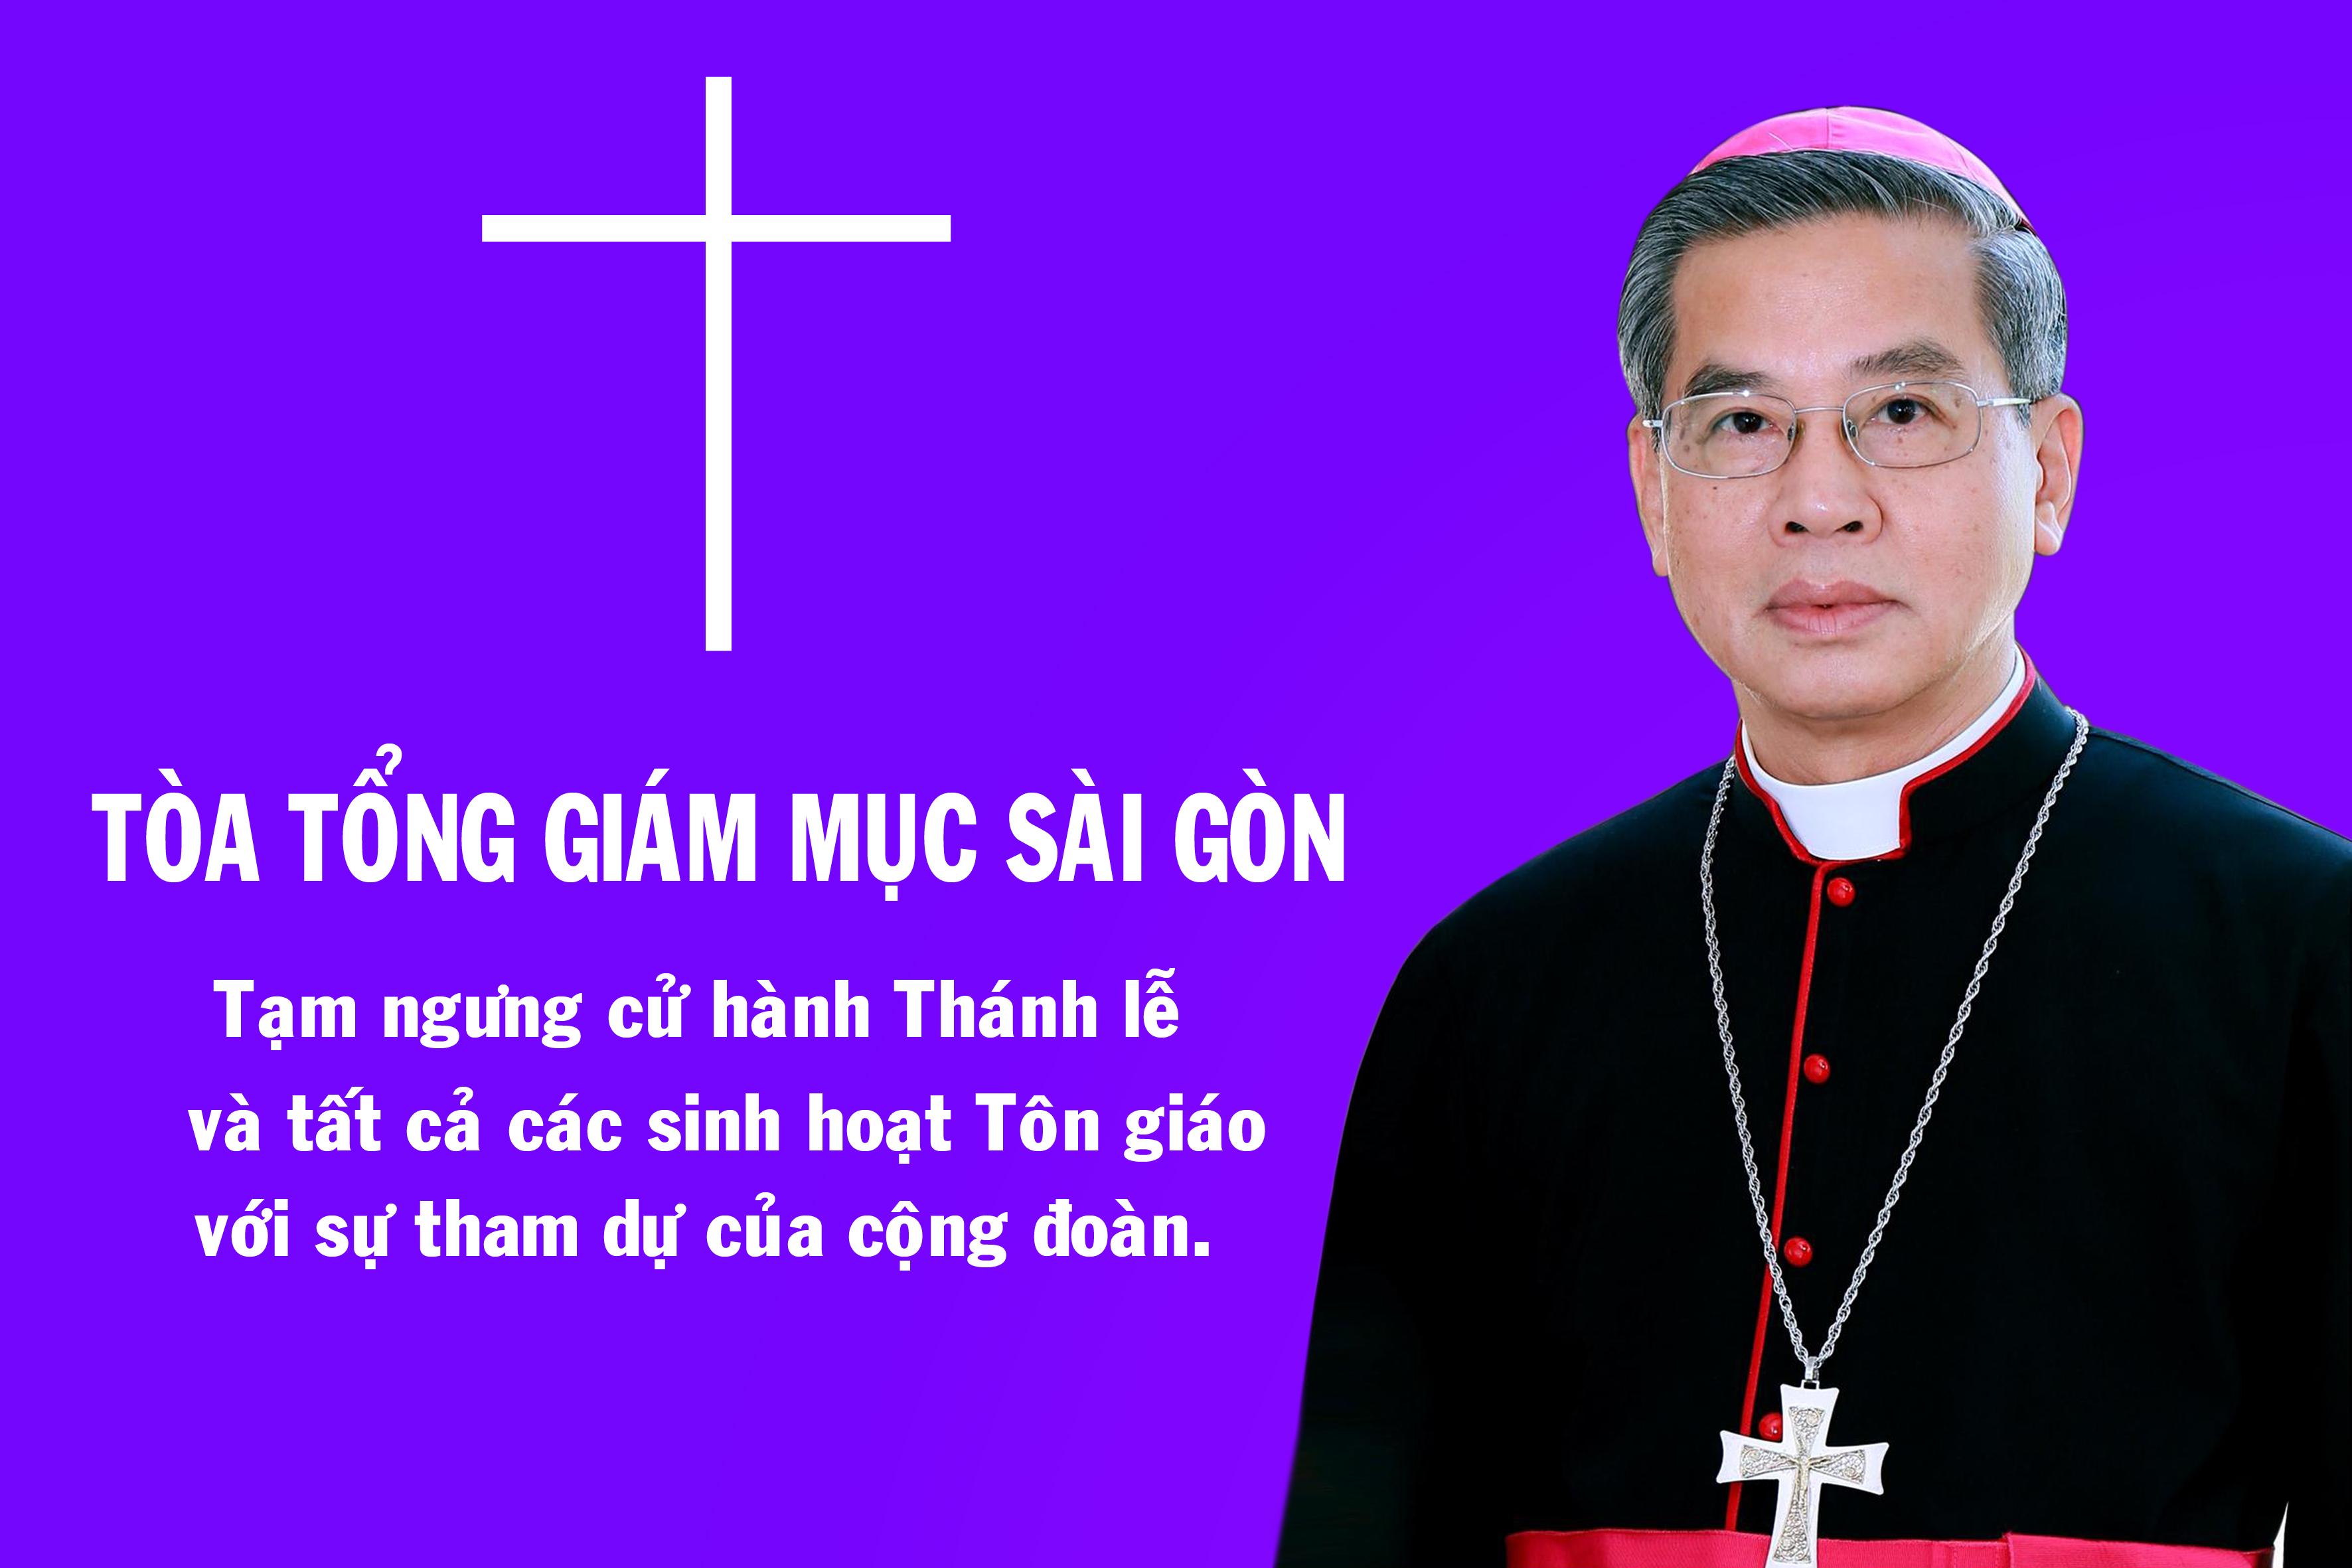 Tòa Tổng Giám mục Sài Gòn: Thông báo tạm ngưng các sinh hoạt cộng đoàn kể từ 16g00 ngày 26.3.2020